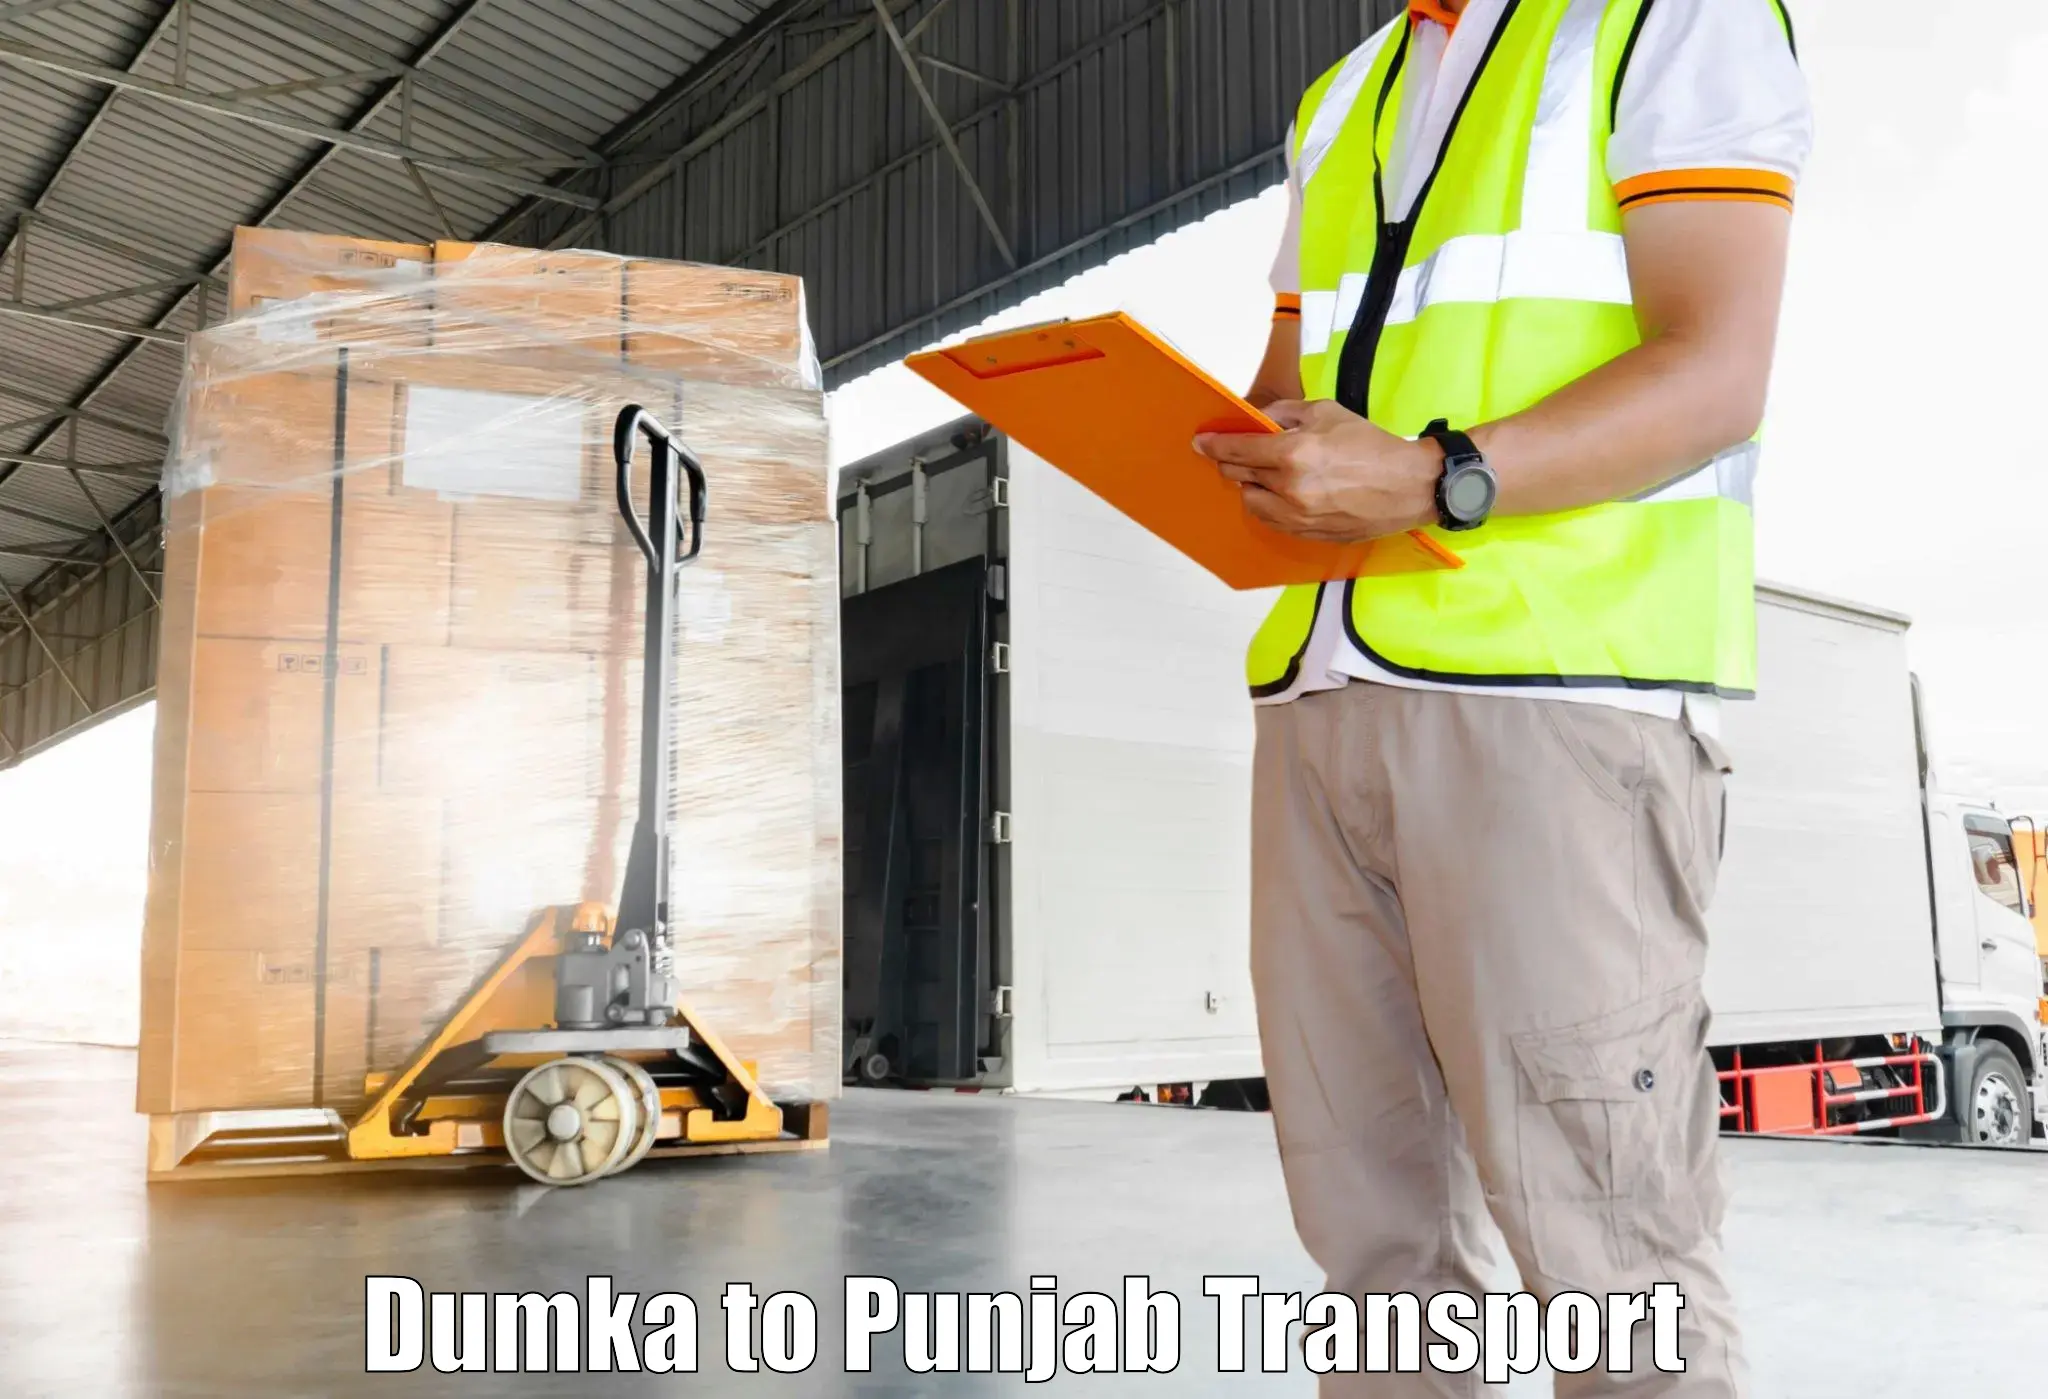 Shipping services Dumka to Tarsikka